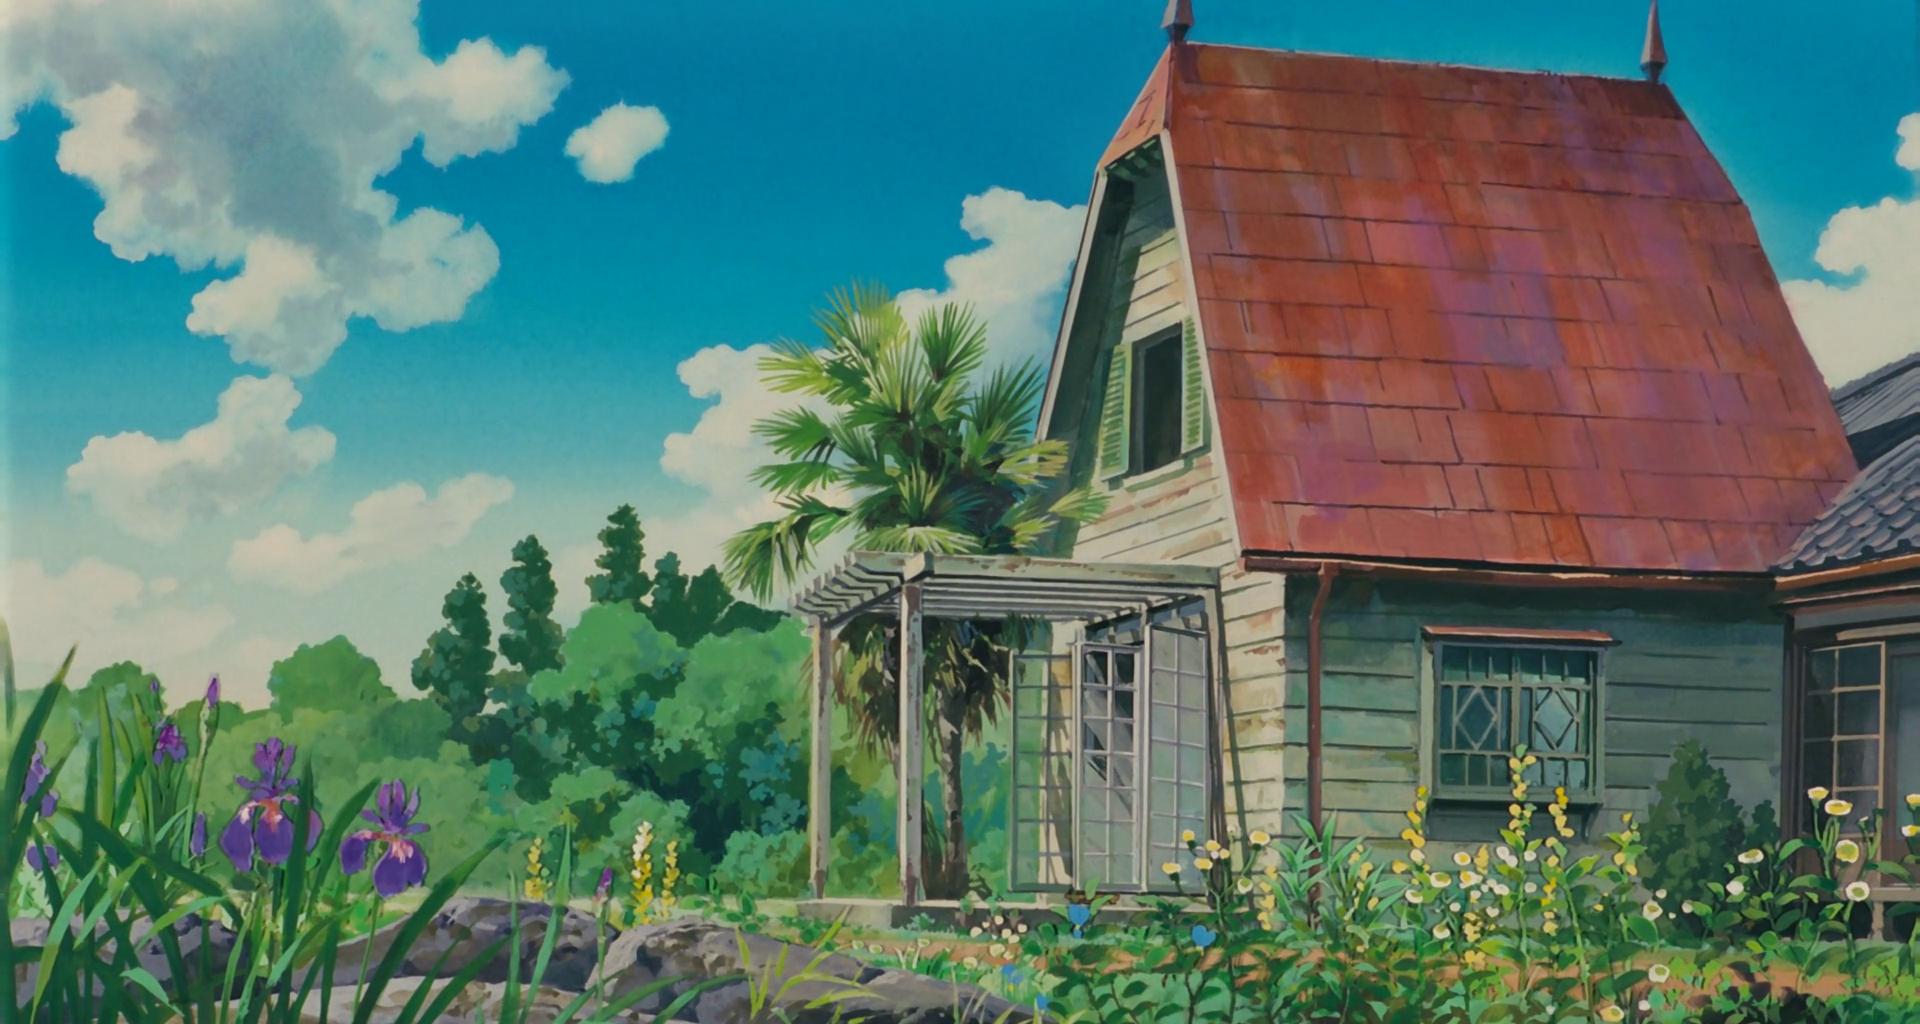 Free Studio Ghibli HD Backgrounds | PixelsTalk.Net